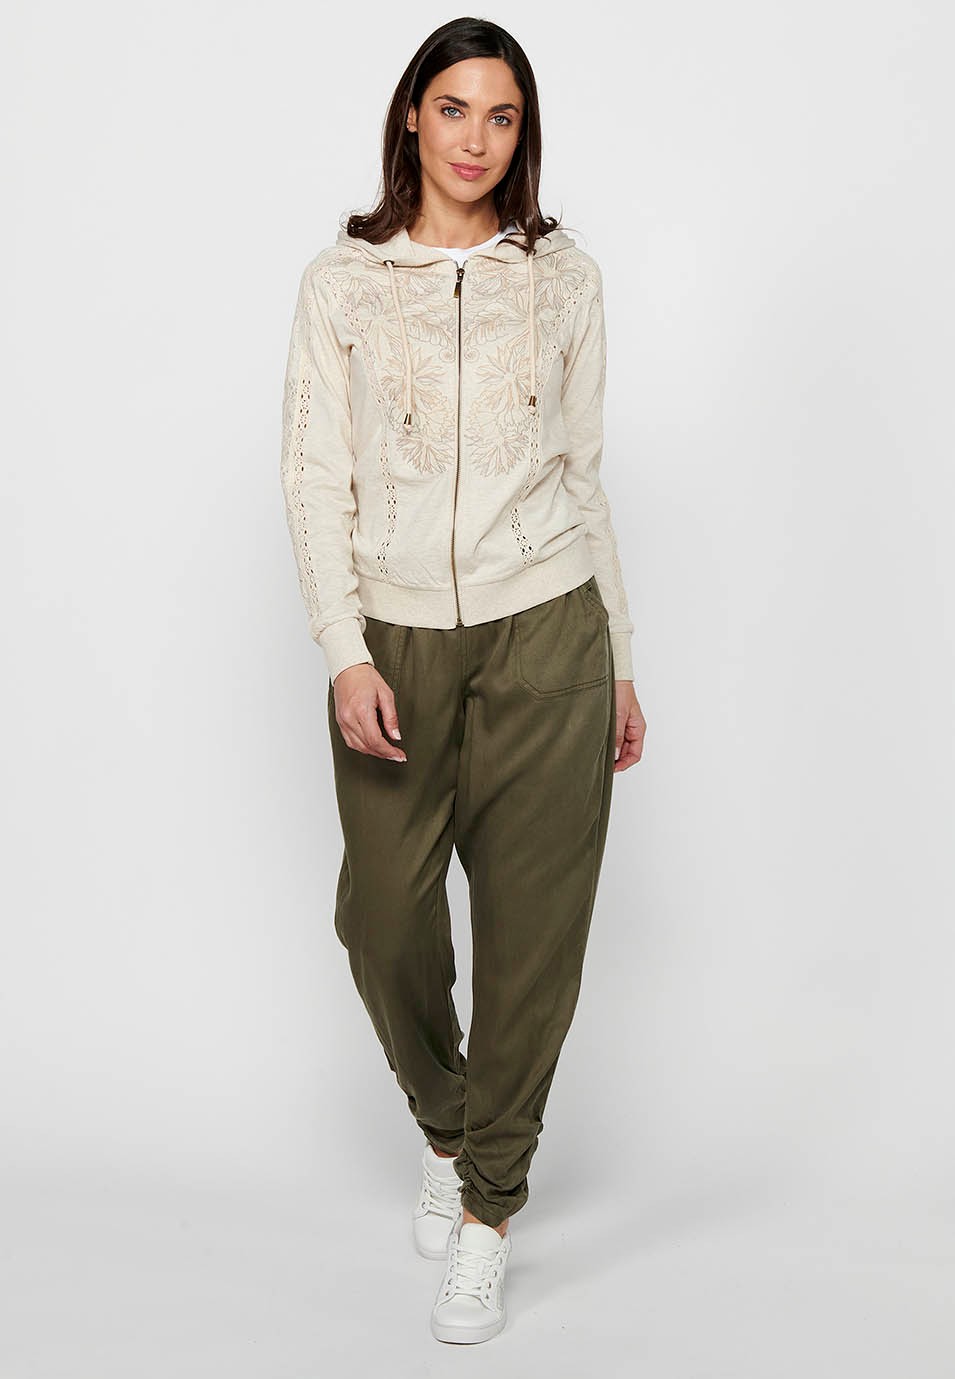 Veste sweat-shirt avec fermeture à glissière sur le devant avec détails en dentelle et col à capuche couleur pierre pour femme 4